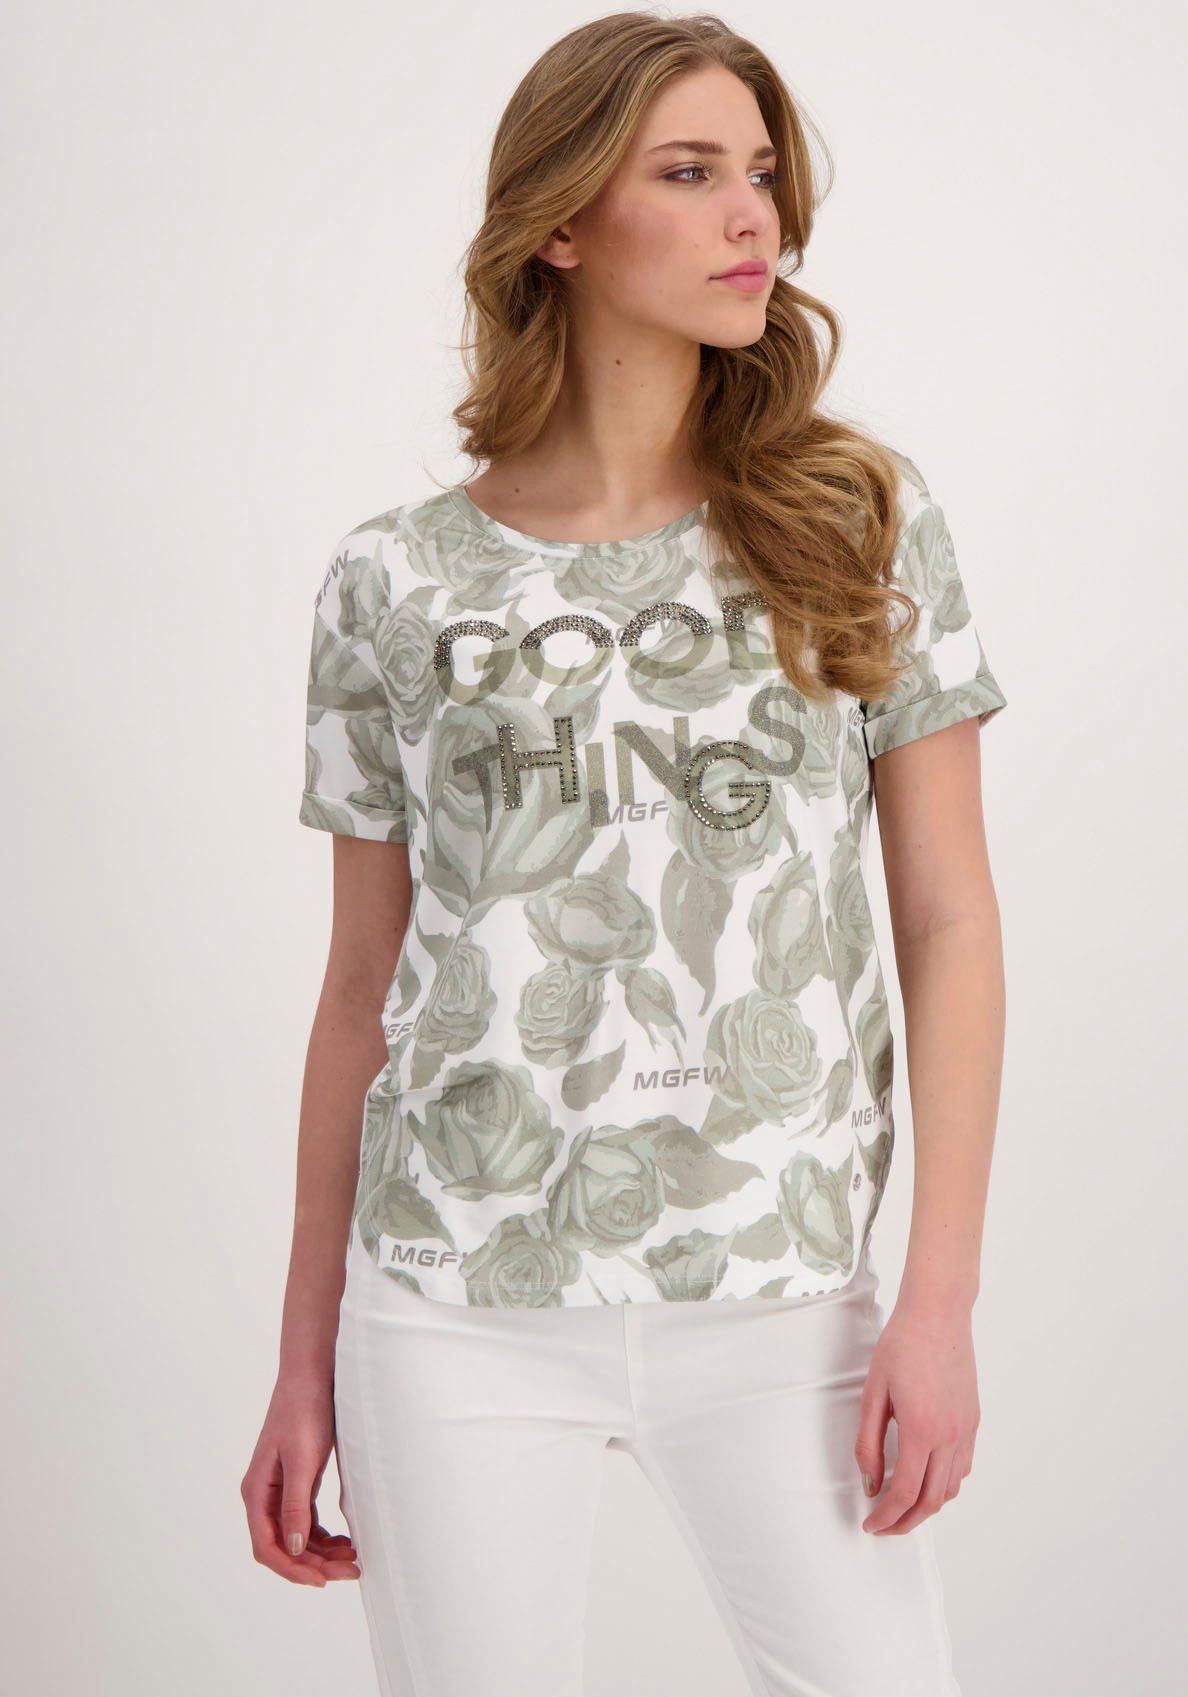 Glitzerschrift Monari und Blumenmuster, Monari Rundhalsshirt Shirt von mit Blumendruck Glitzersteinchen Feminines und mit